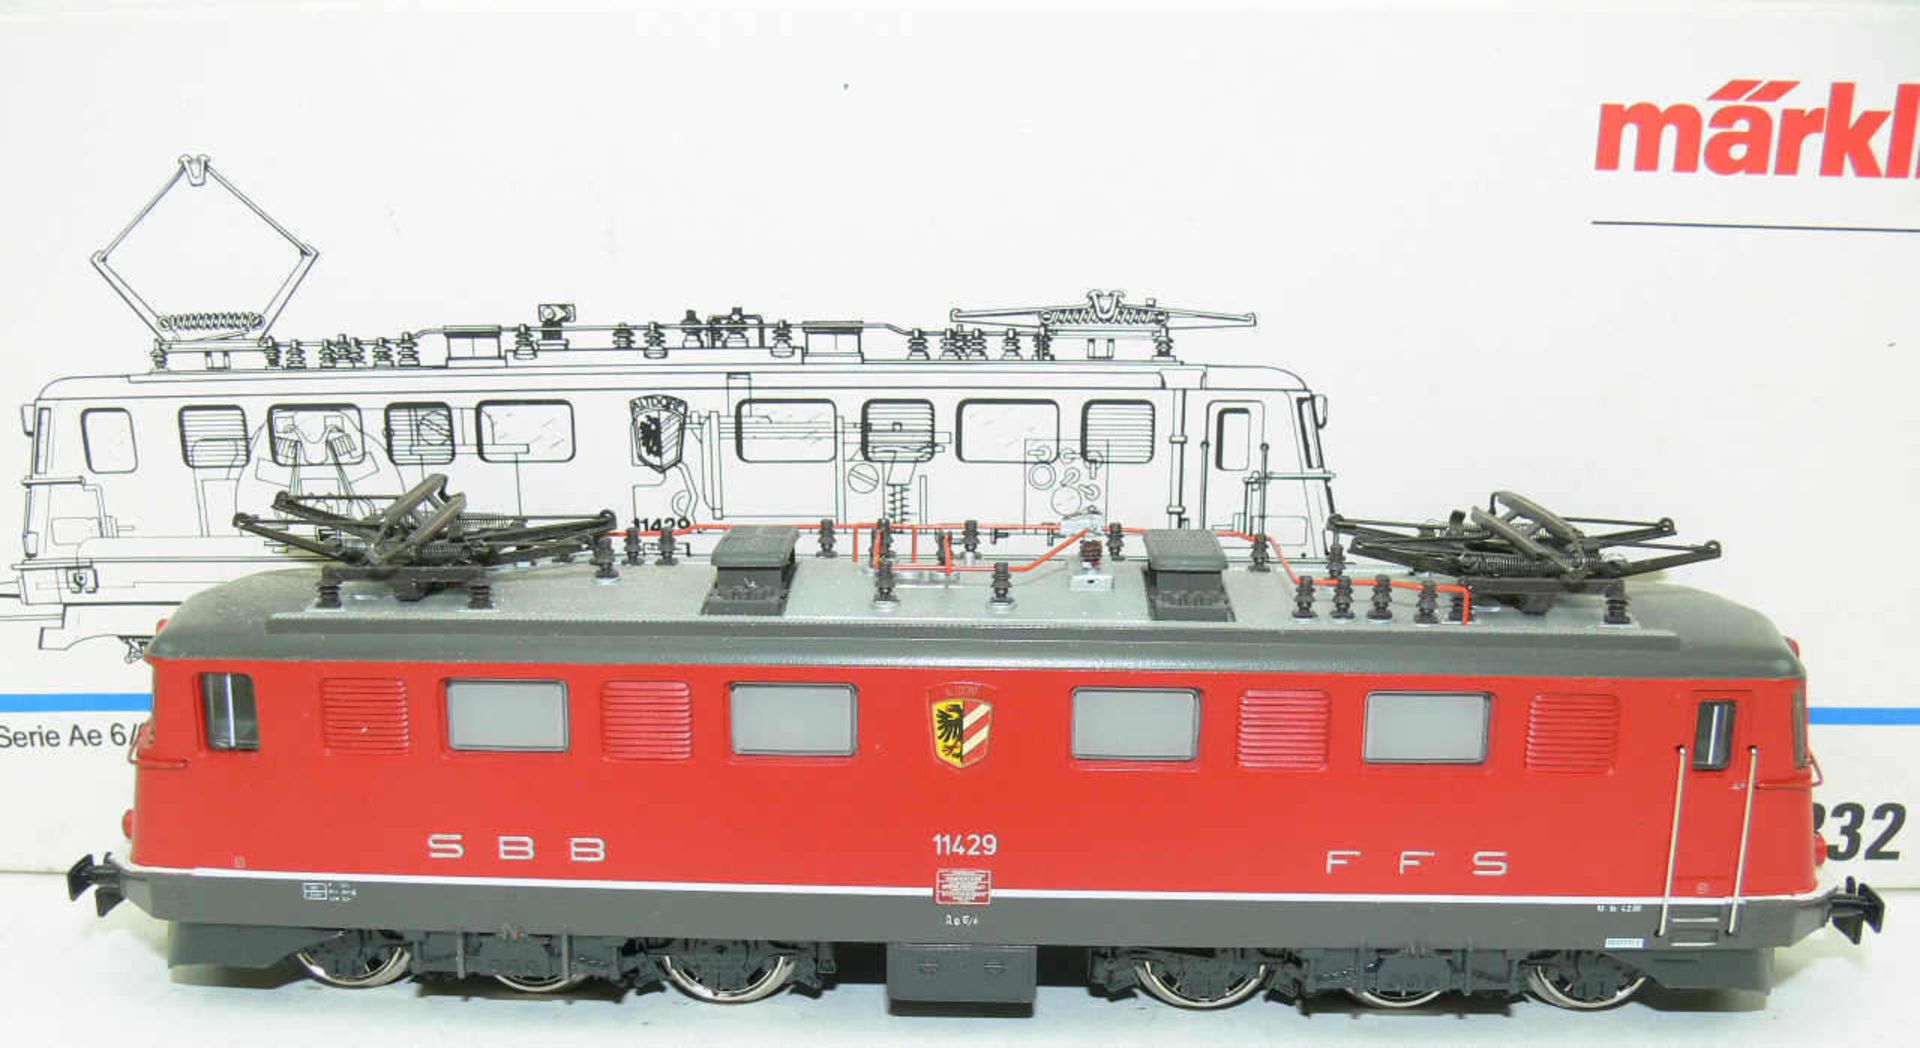 Märklin 3332, E - Lokomotive Ae 6/6 der SBB. BN 11429. Guss. Rot. Sehr guter Zustand in OVP.